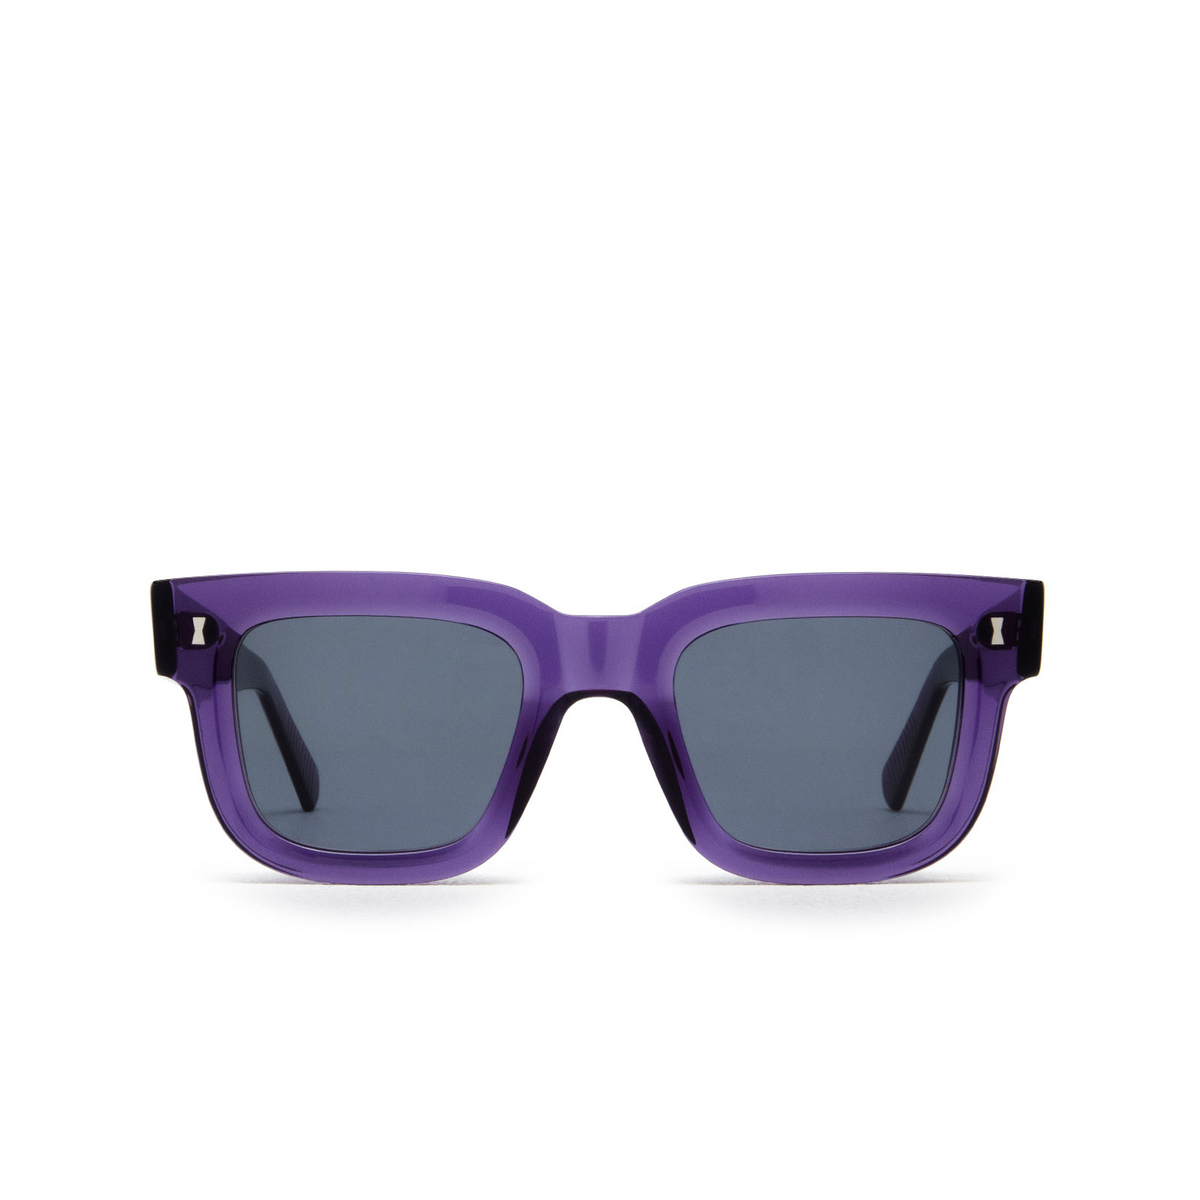 Cubitts PLENDER Sunglasses PLE-R-VIO Violet - front view